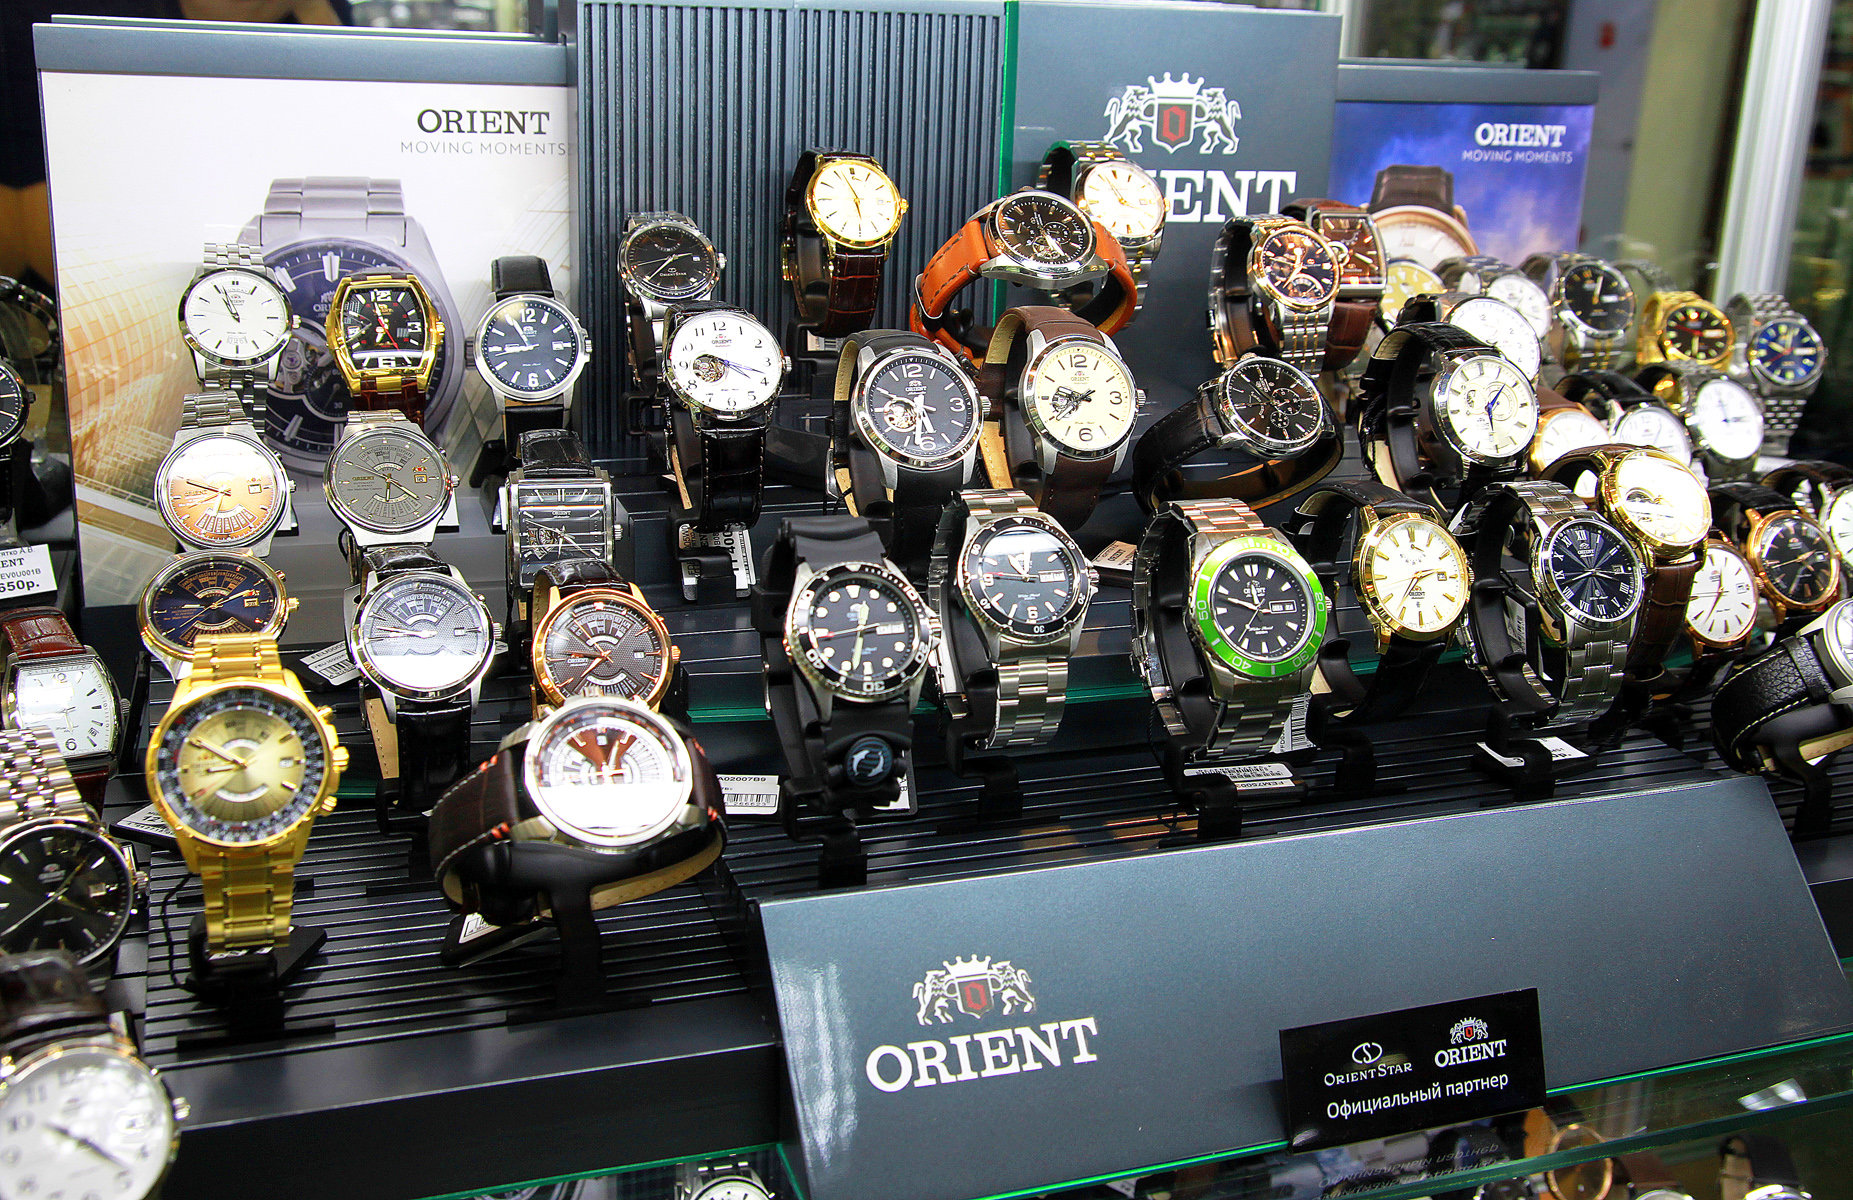 Магазин часы маркет. Интернет магазин часов в Москве. 316 Watch магазин часов. Часы Оренбург. Часы Караван.